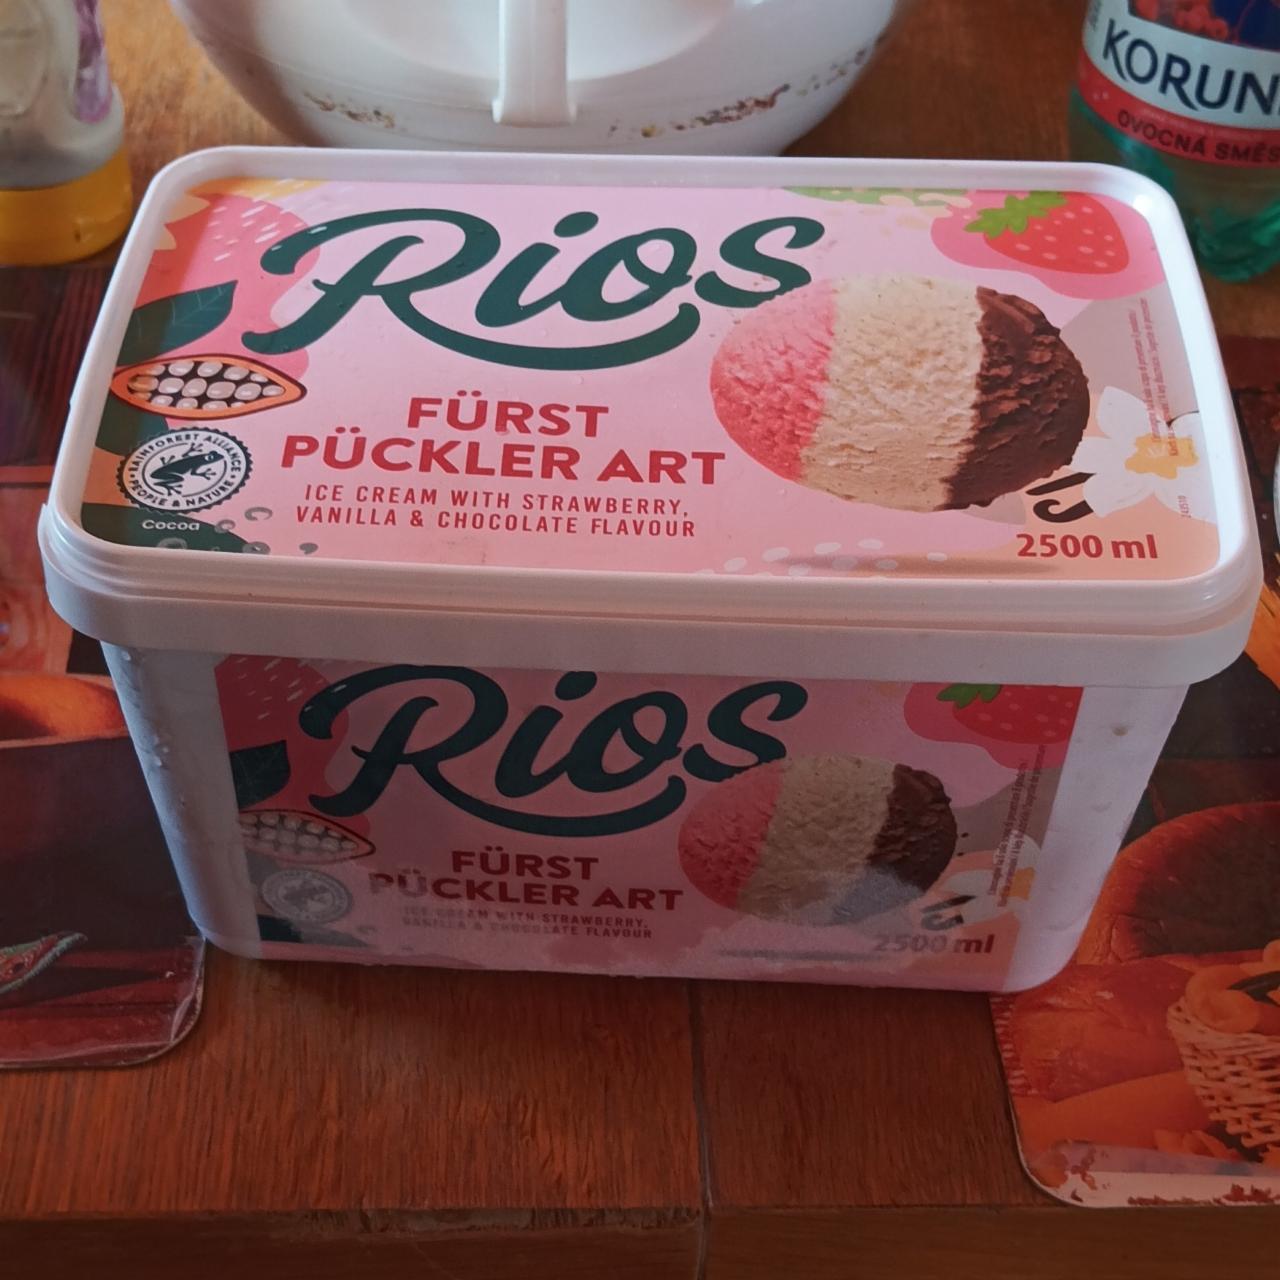 Fotografie - Fürst pückler art ice crema with strawberry, vanilla & chcolate flavour Rios